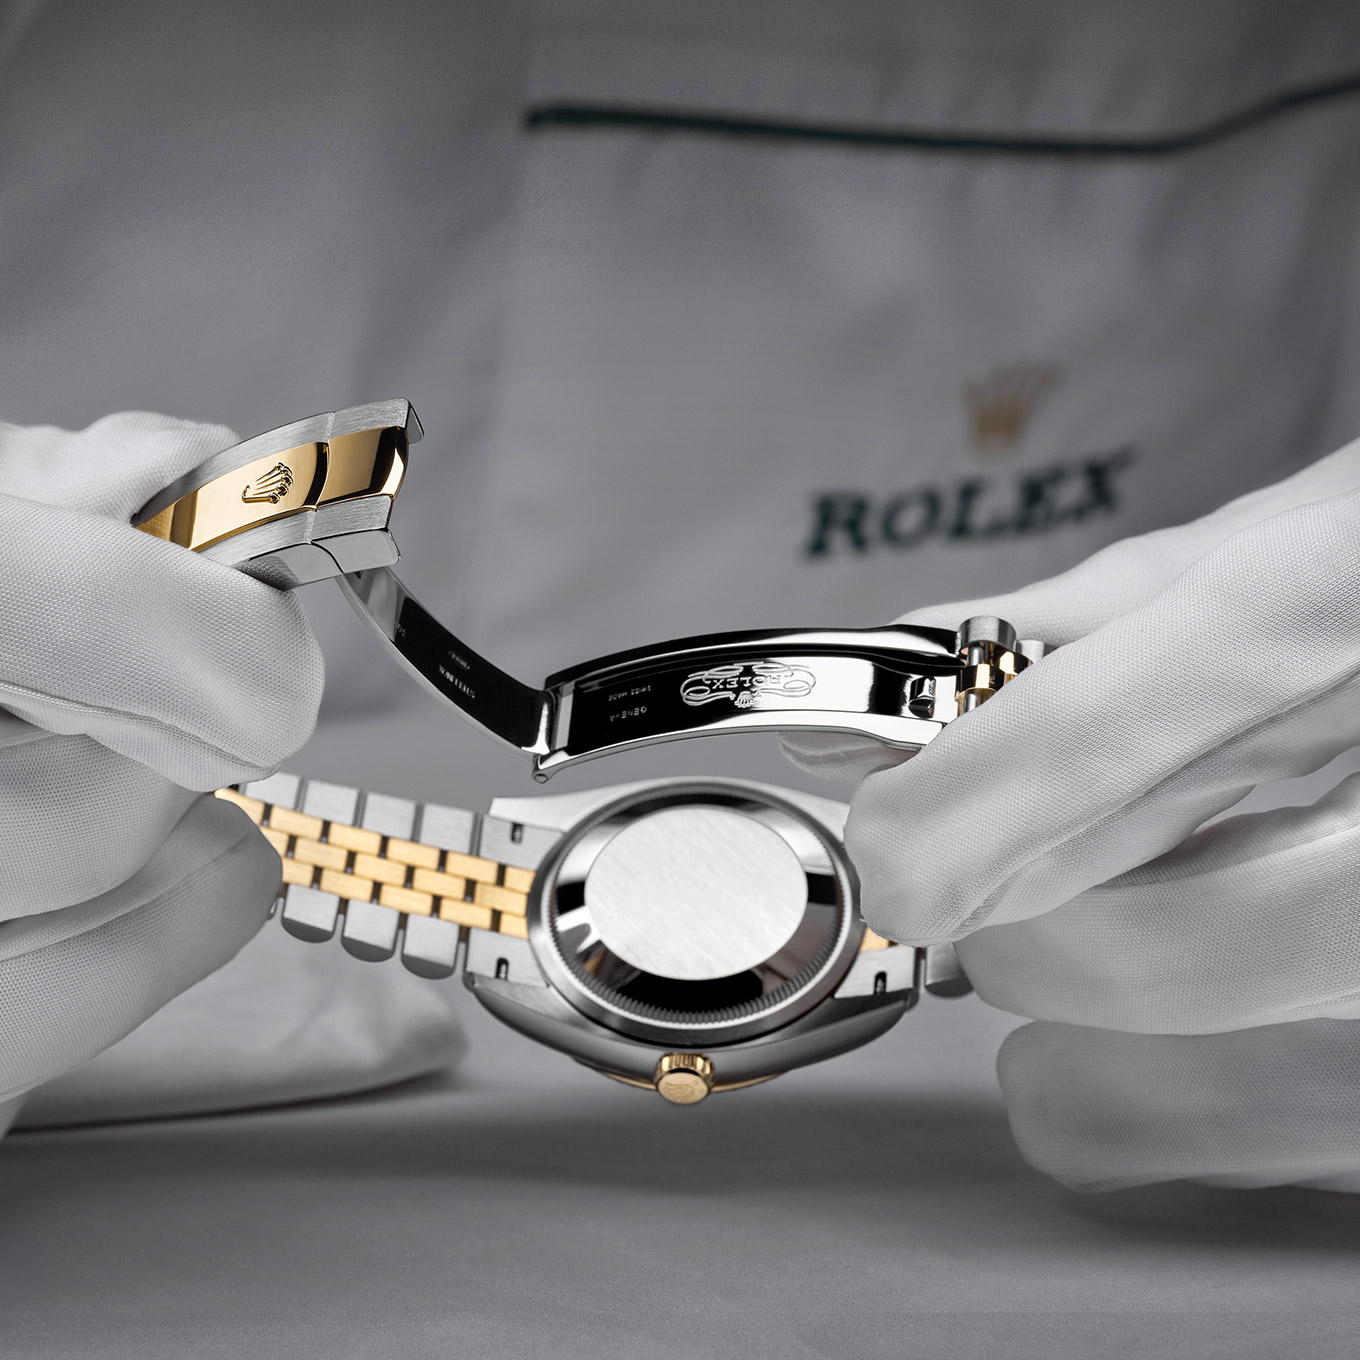 De Rolex onderhoudsprocedure